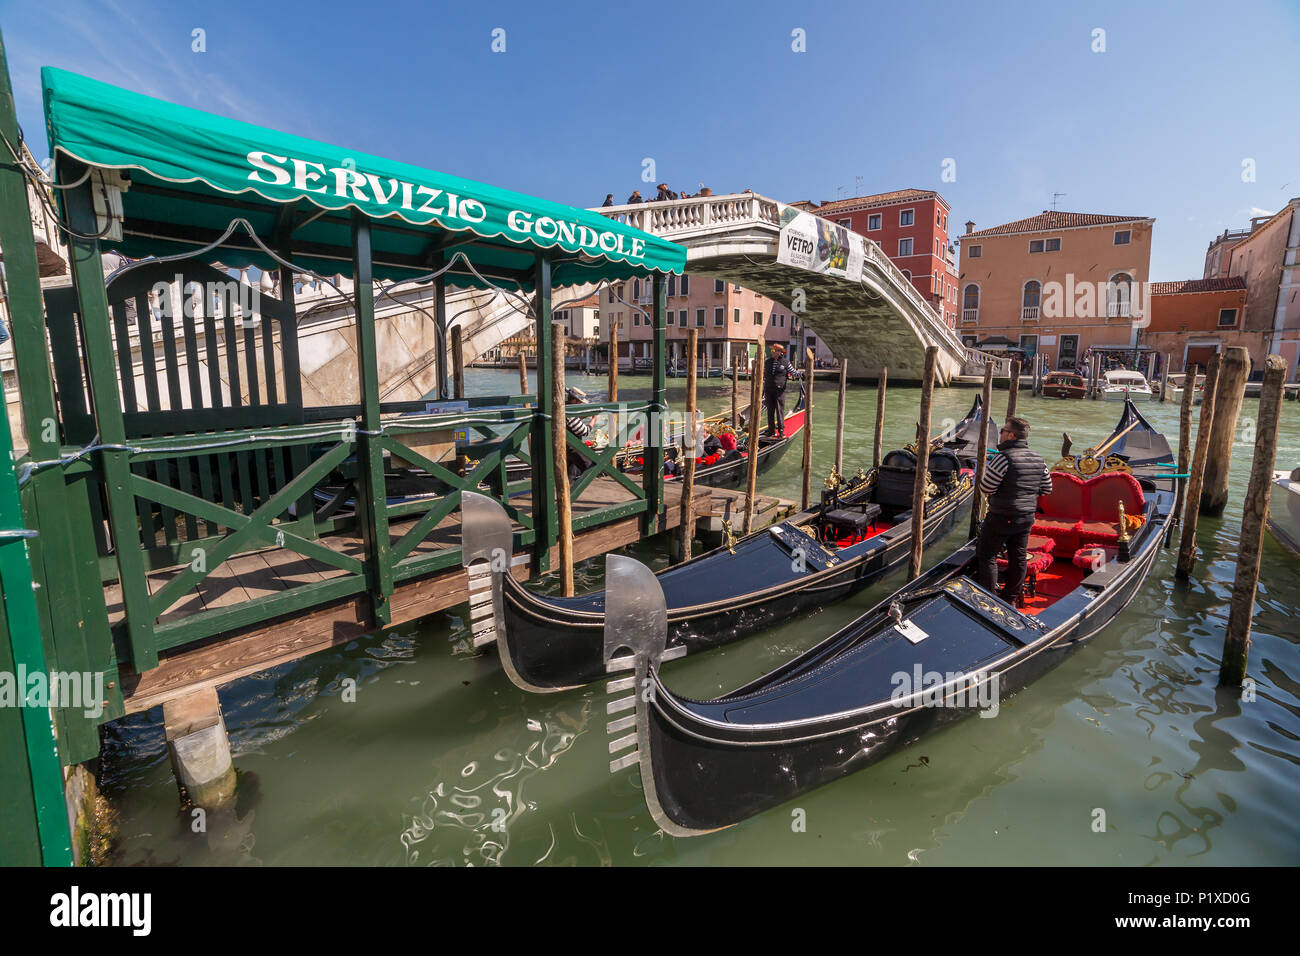 Venise, Italie - 23 mars 2018 : parking télécabine à proximité du célèbre pont Realto sur un Grand Canal à Venise avec le Servizio Gondole sign Banque D'Images